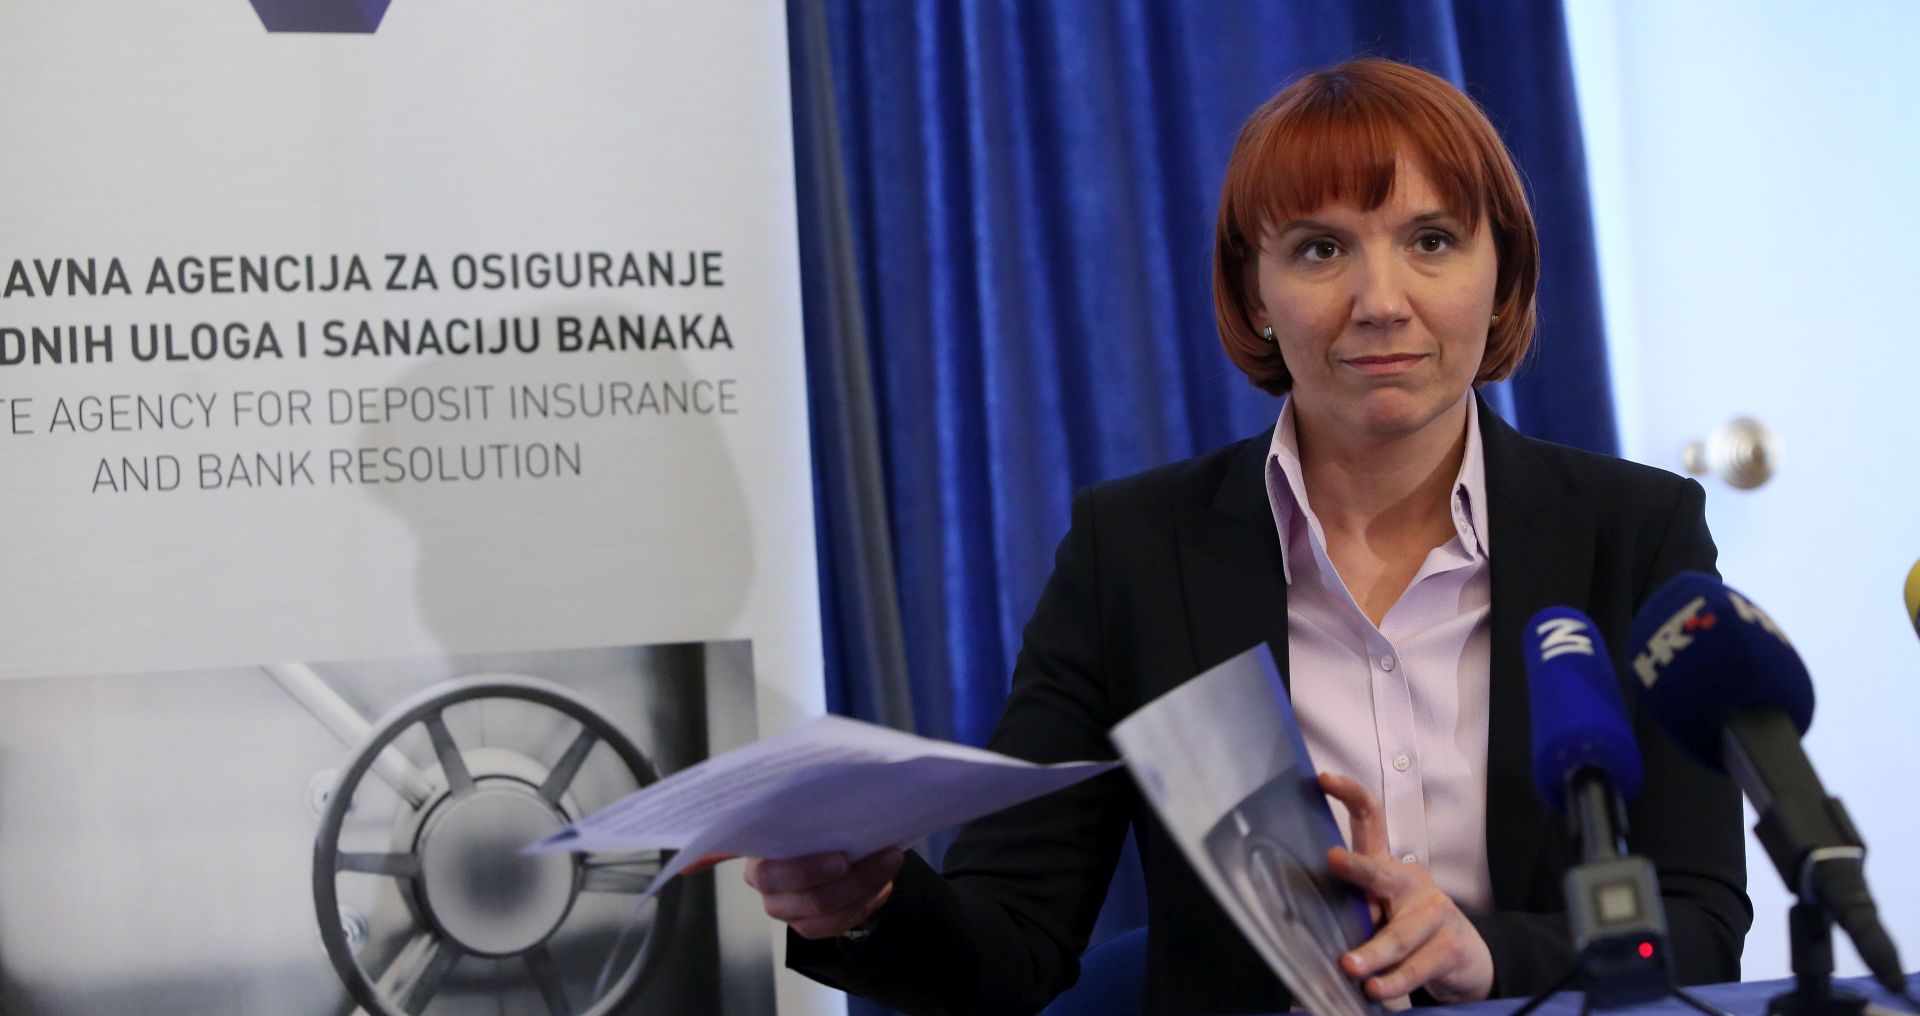 DAB ima spremna sredstva za isplatu osiguranih depozita u Banci splitsko-dalmatinskoj